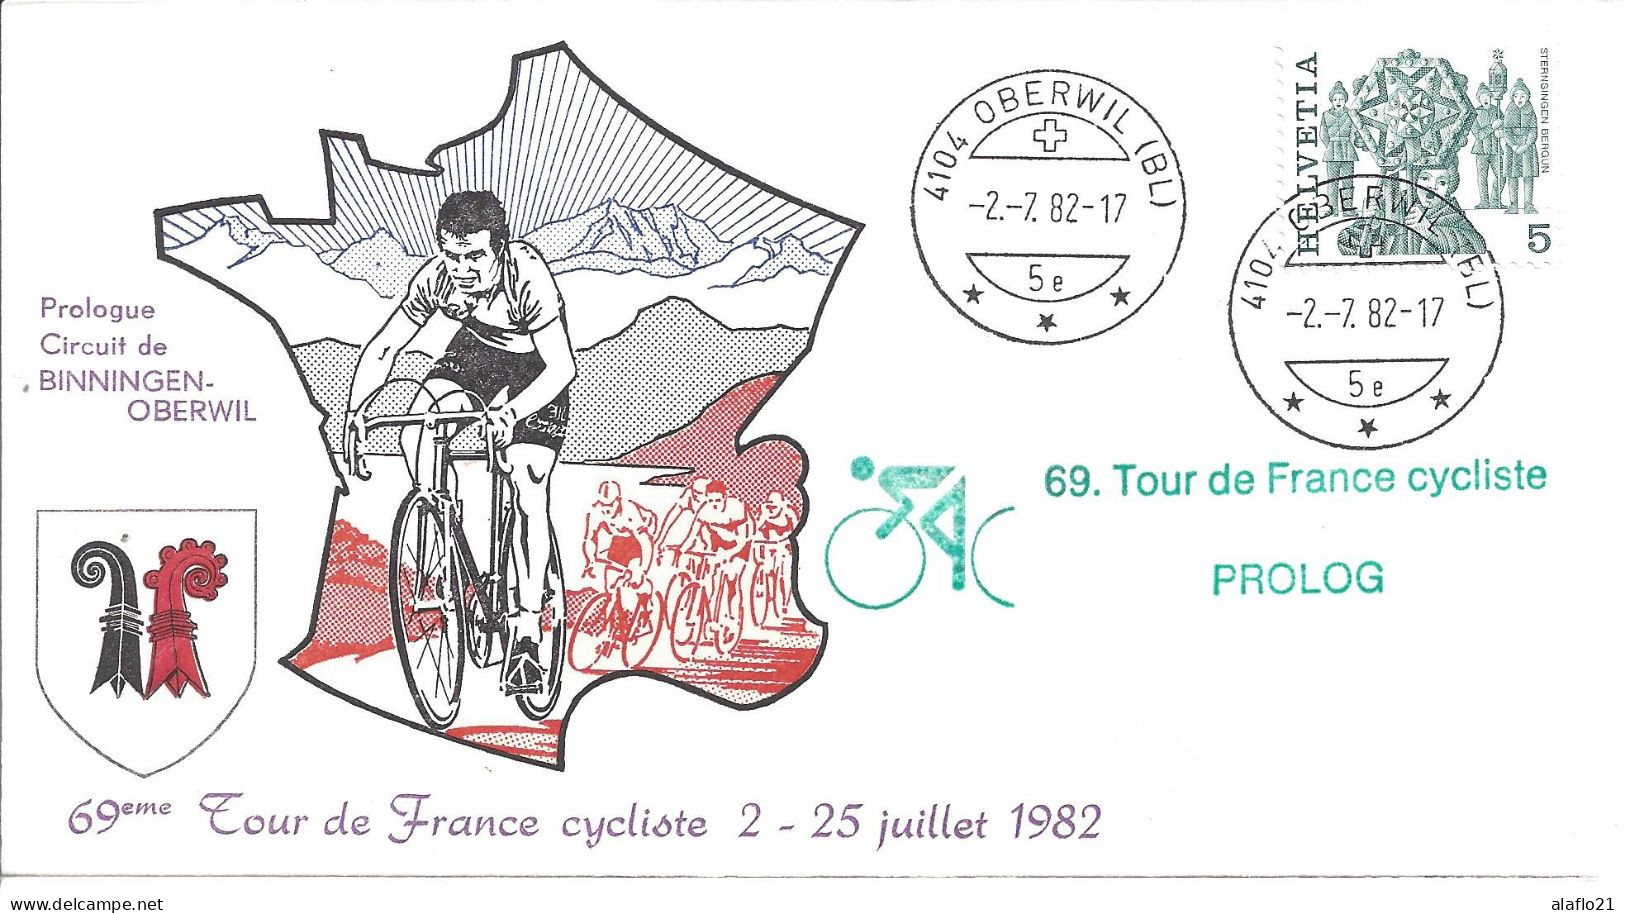 ENVELOPPE OFFICIELLE TOUR De FRANCE CYCLISTE 1982 - PROLOGUE - BINNINGEN-OBERWIL - Matasellos Conmemorativos